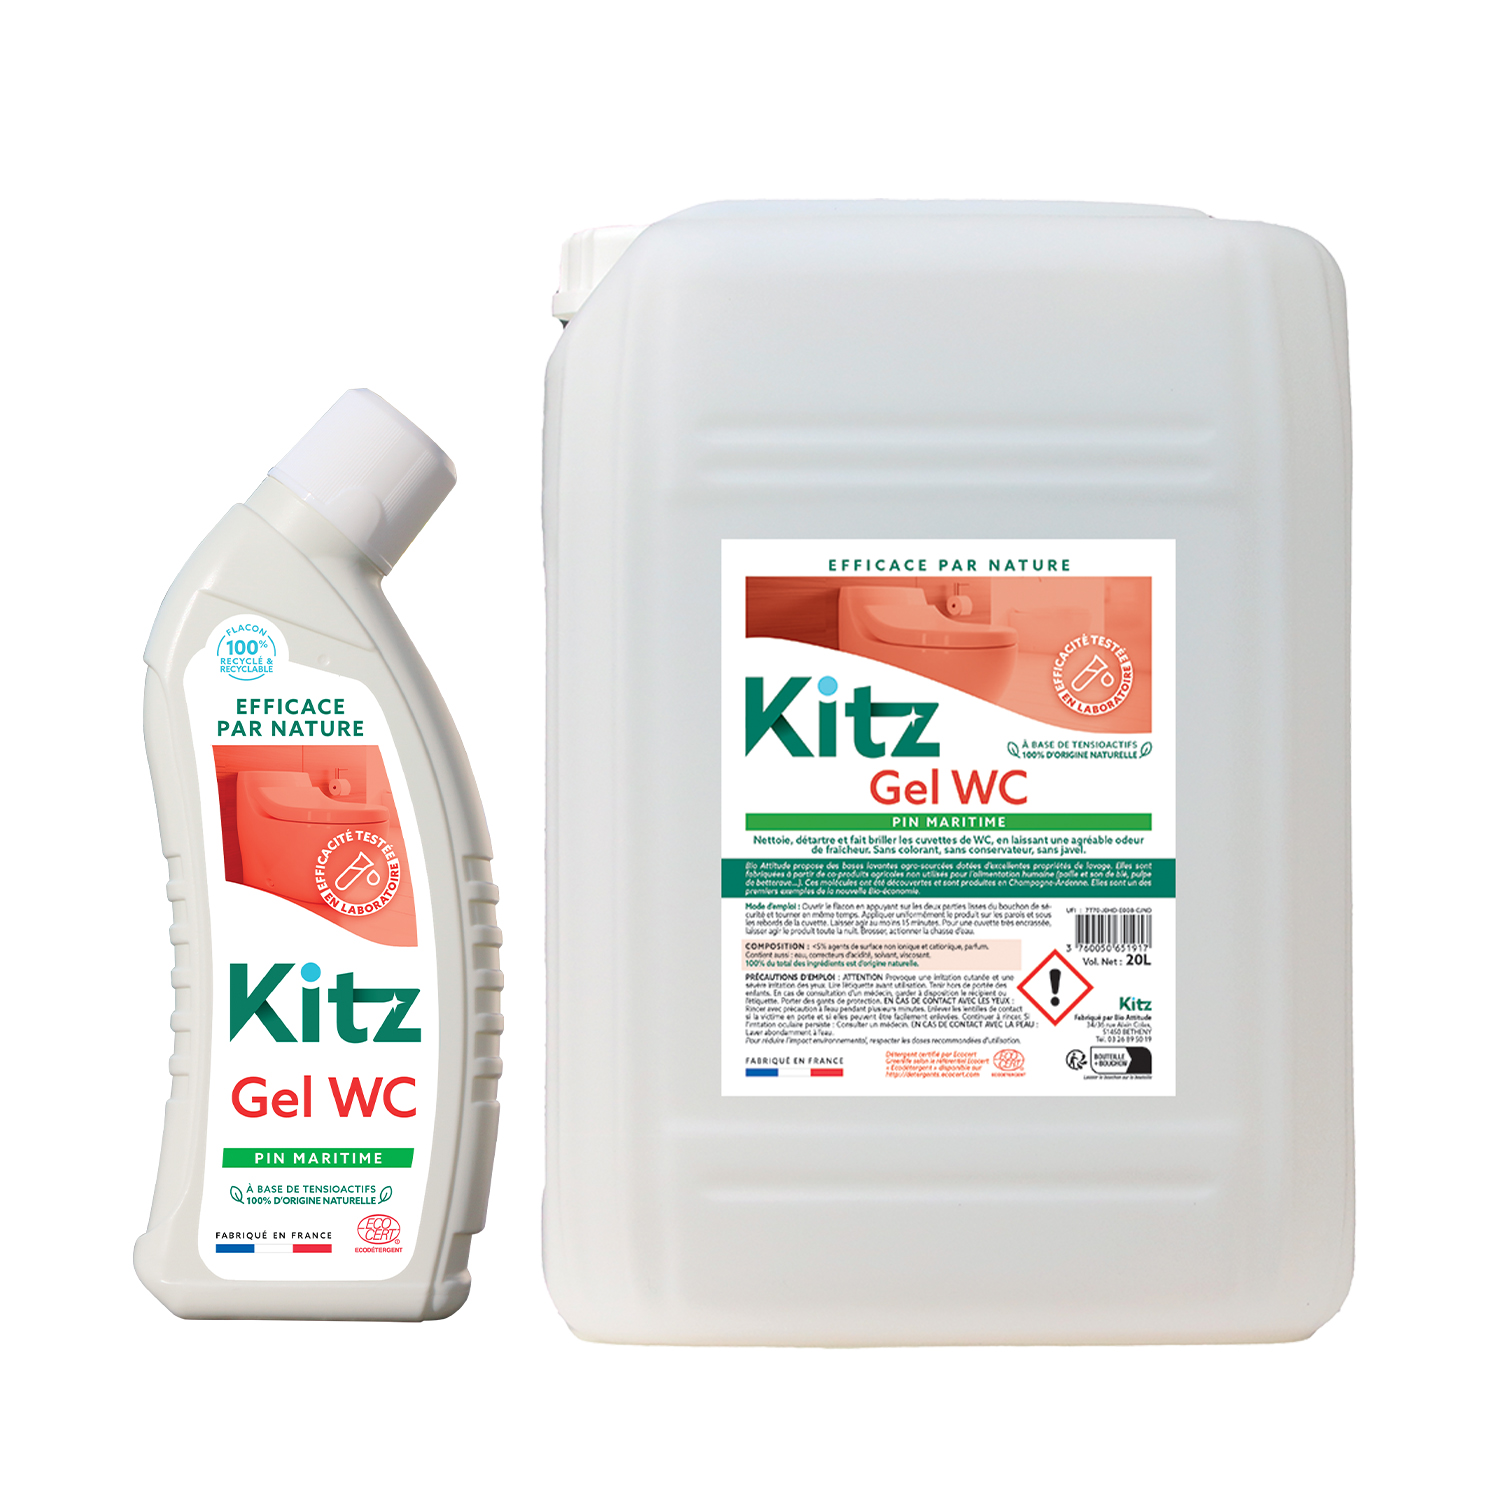 Gel WC Kitz - Nettoyants écologiques puissants pour l'entretien des locaux professionnels et de la maison.